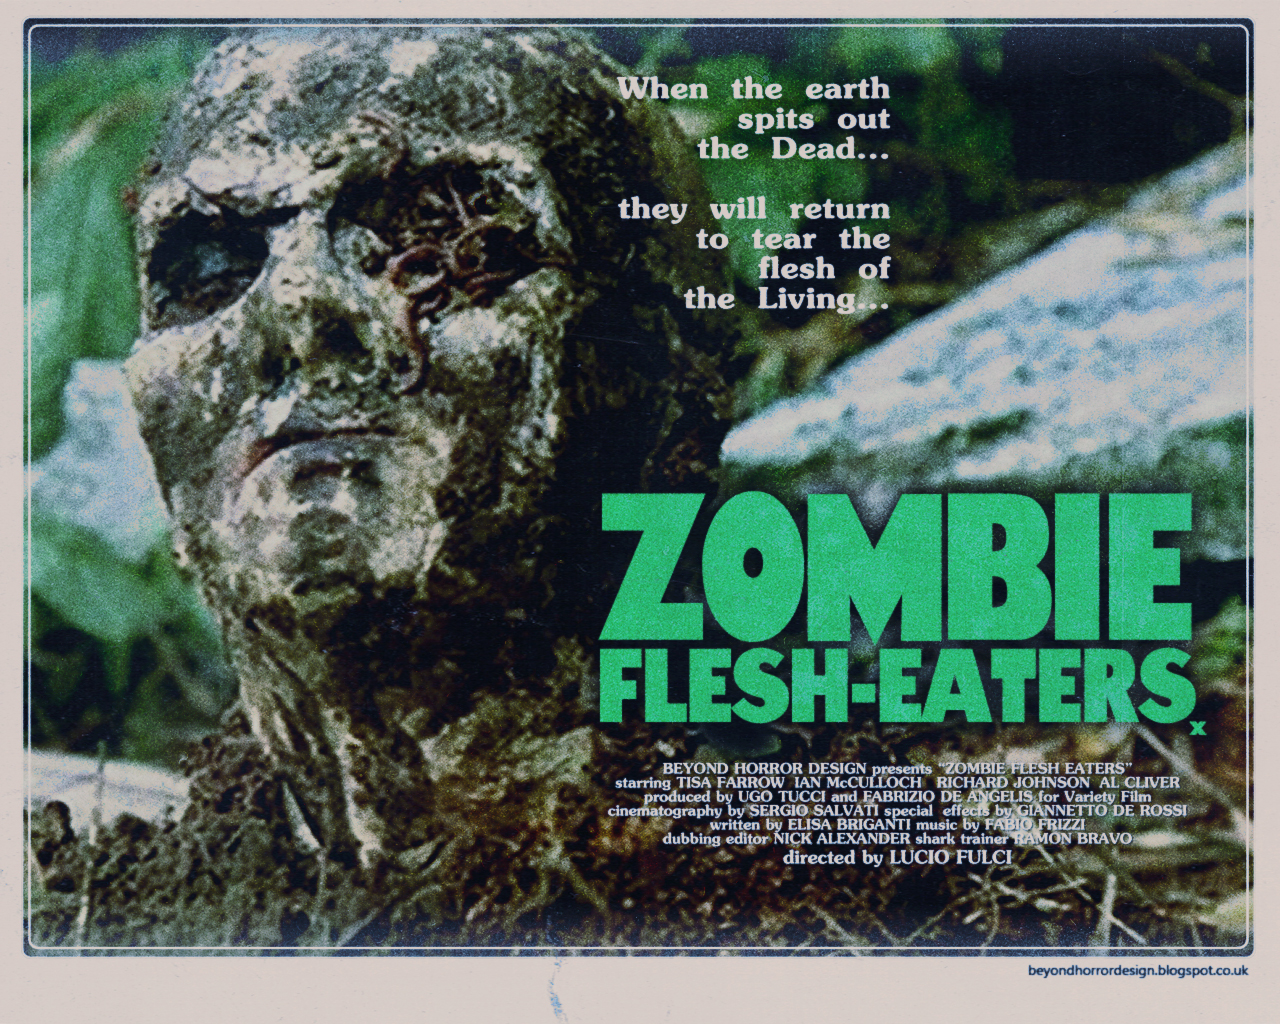 ‘Zombie’ aka ‘Zombie Flesh Eaters’: Flesh Eating, Eye Gouging, Zombie ...